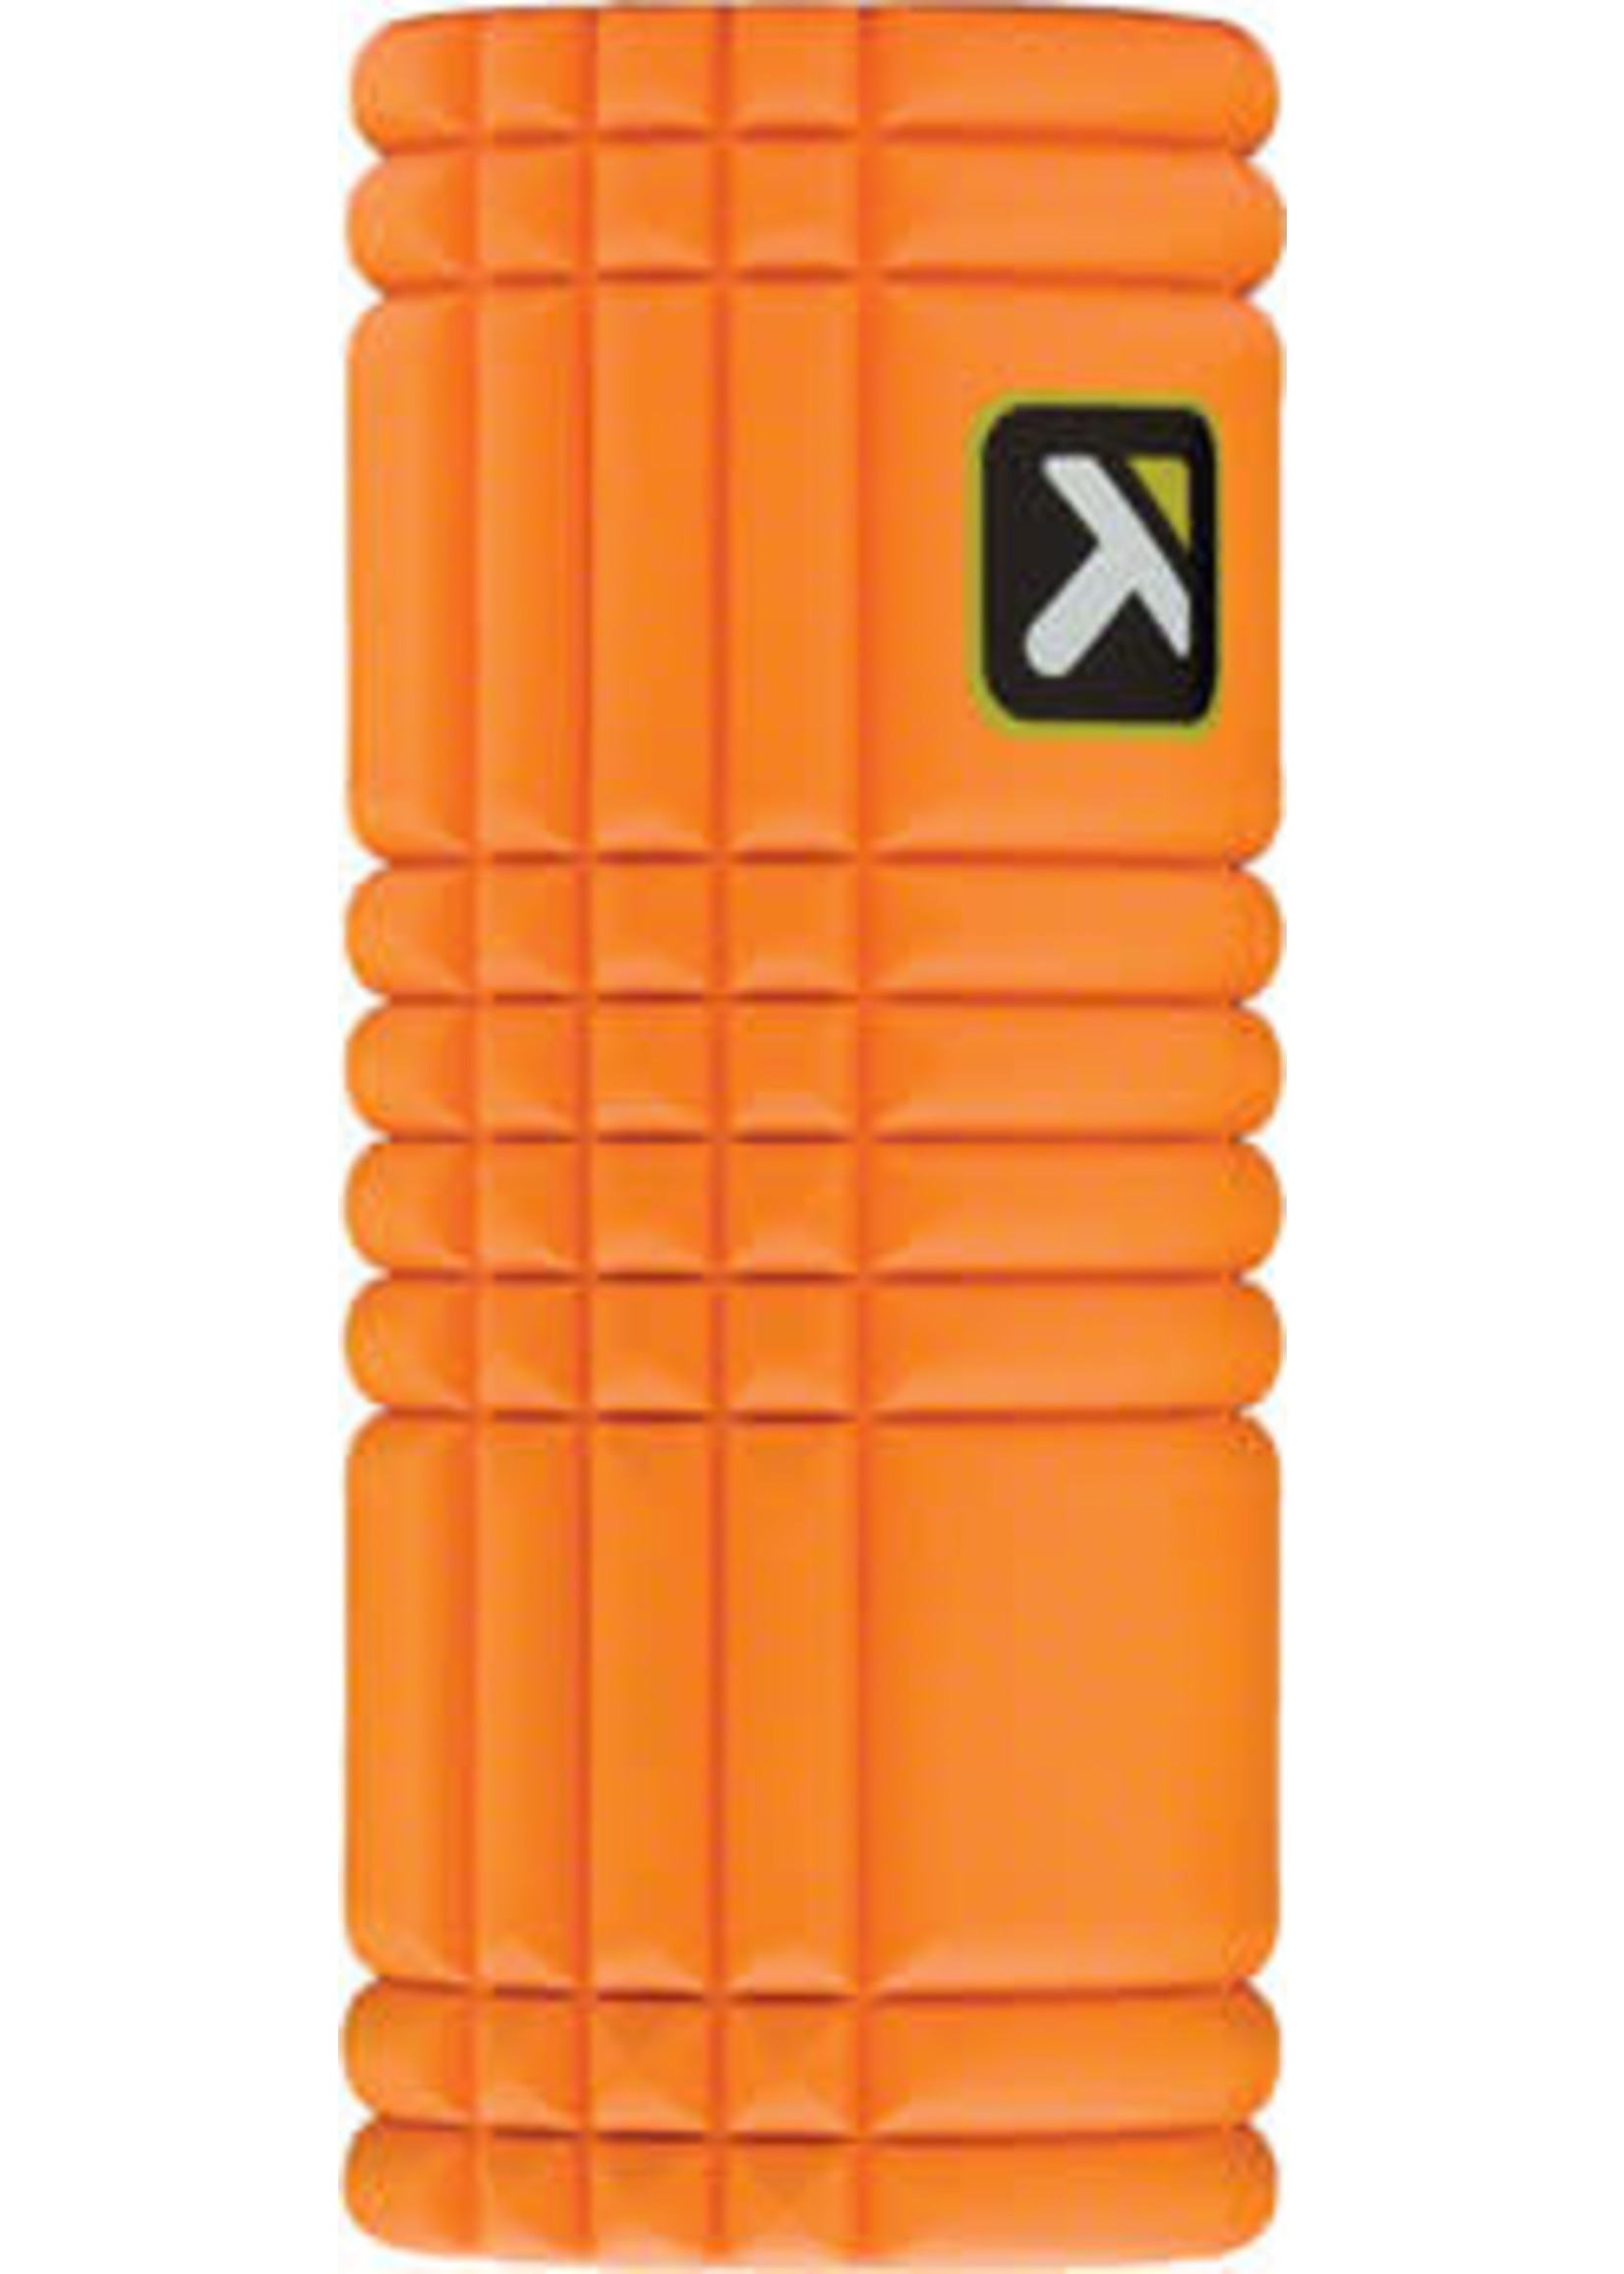 Trigger Point Trigger Point GRID Foam Roller: 13-inch Roller, Orange